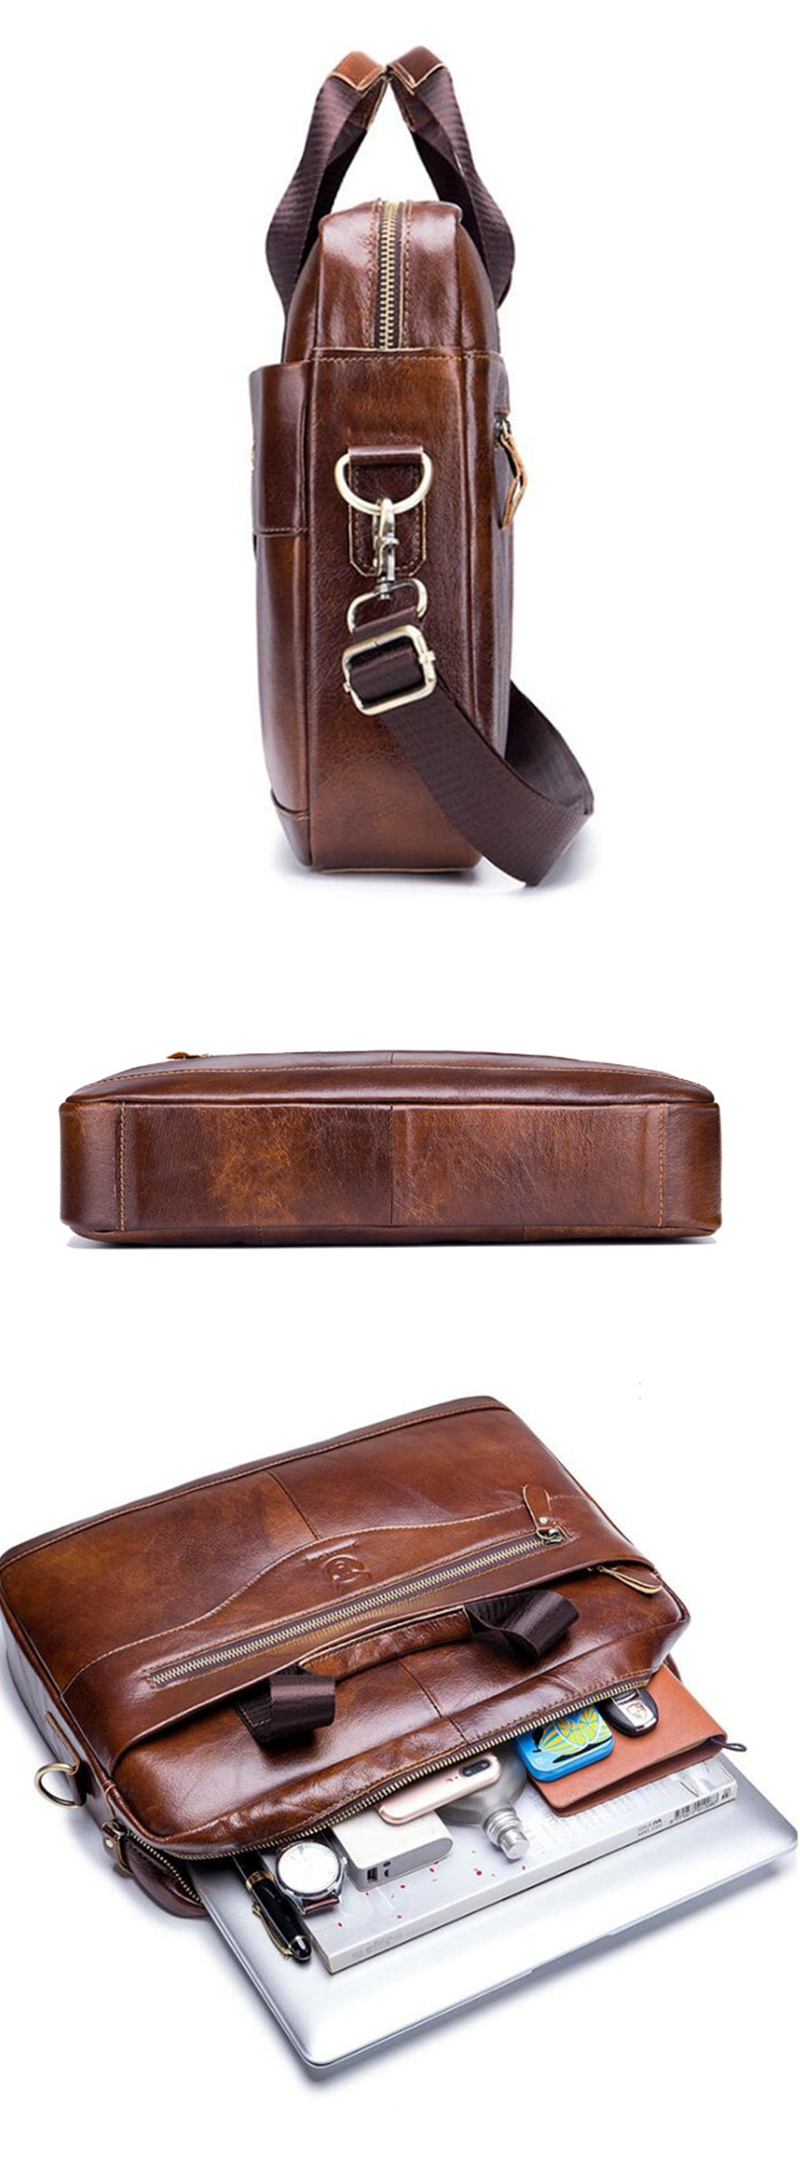 Men-Genuine-Leather-Shoulder-Bag-Business-Travel-Crossbody-Messenger-Handbag-Briefcase-1438498-2